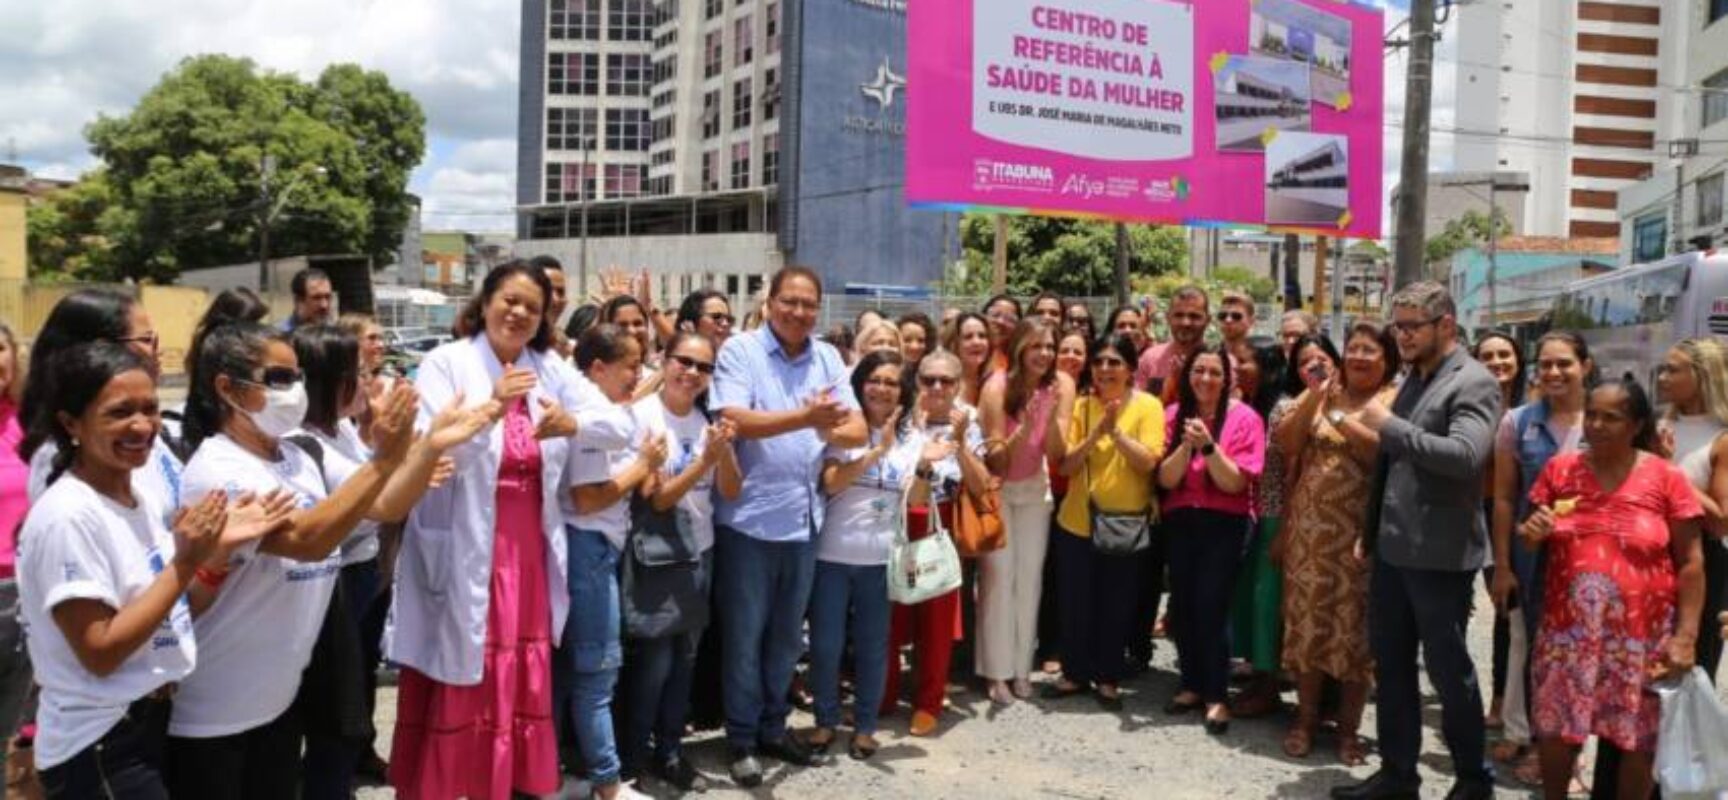 Itabuna será destaque regional após implantação do Centro de Referência em Saúde da Mulher